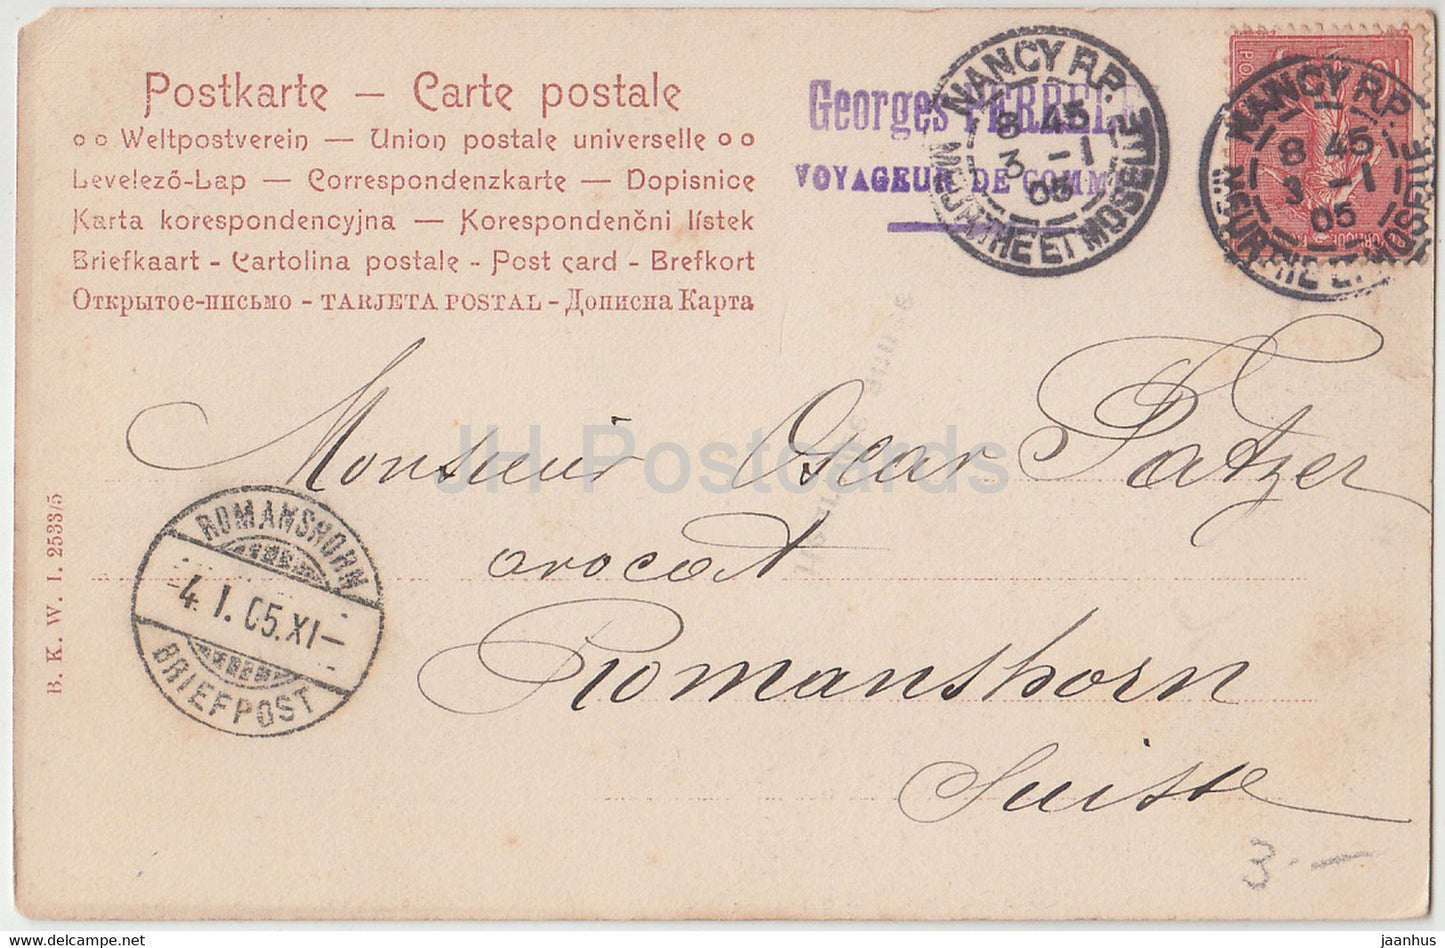 Neujahrsgrußkarte - Heureuse Annee - Frauen - BKW 2533/5 - alte Postkarte - 1905 - Frankreich - gebraucht